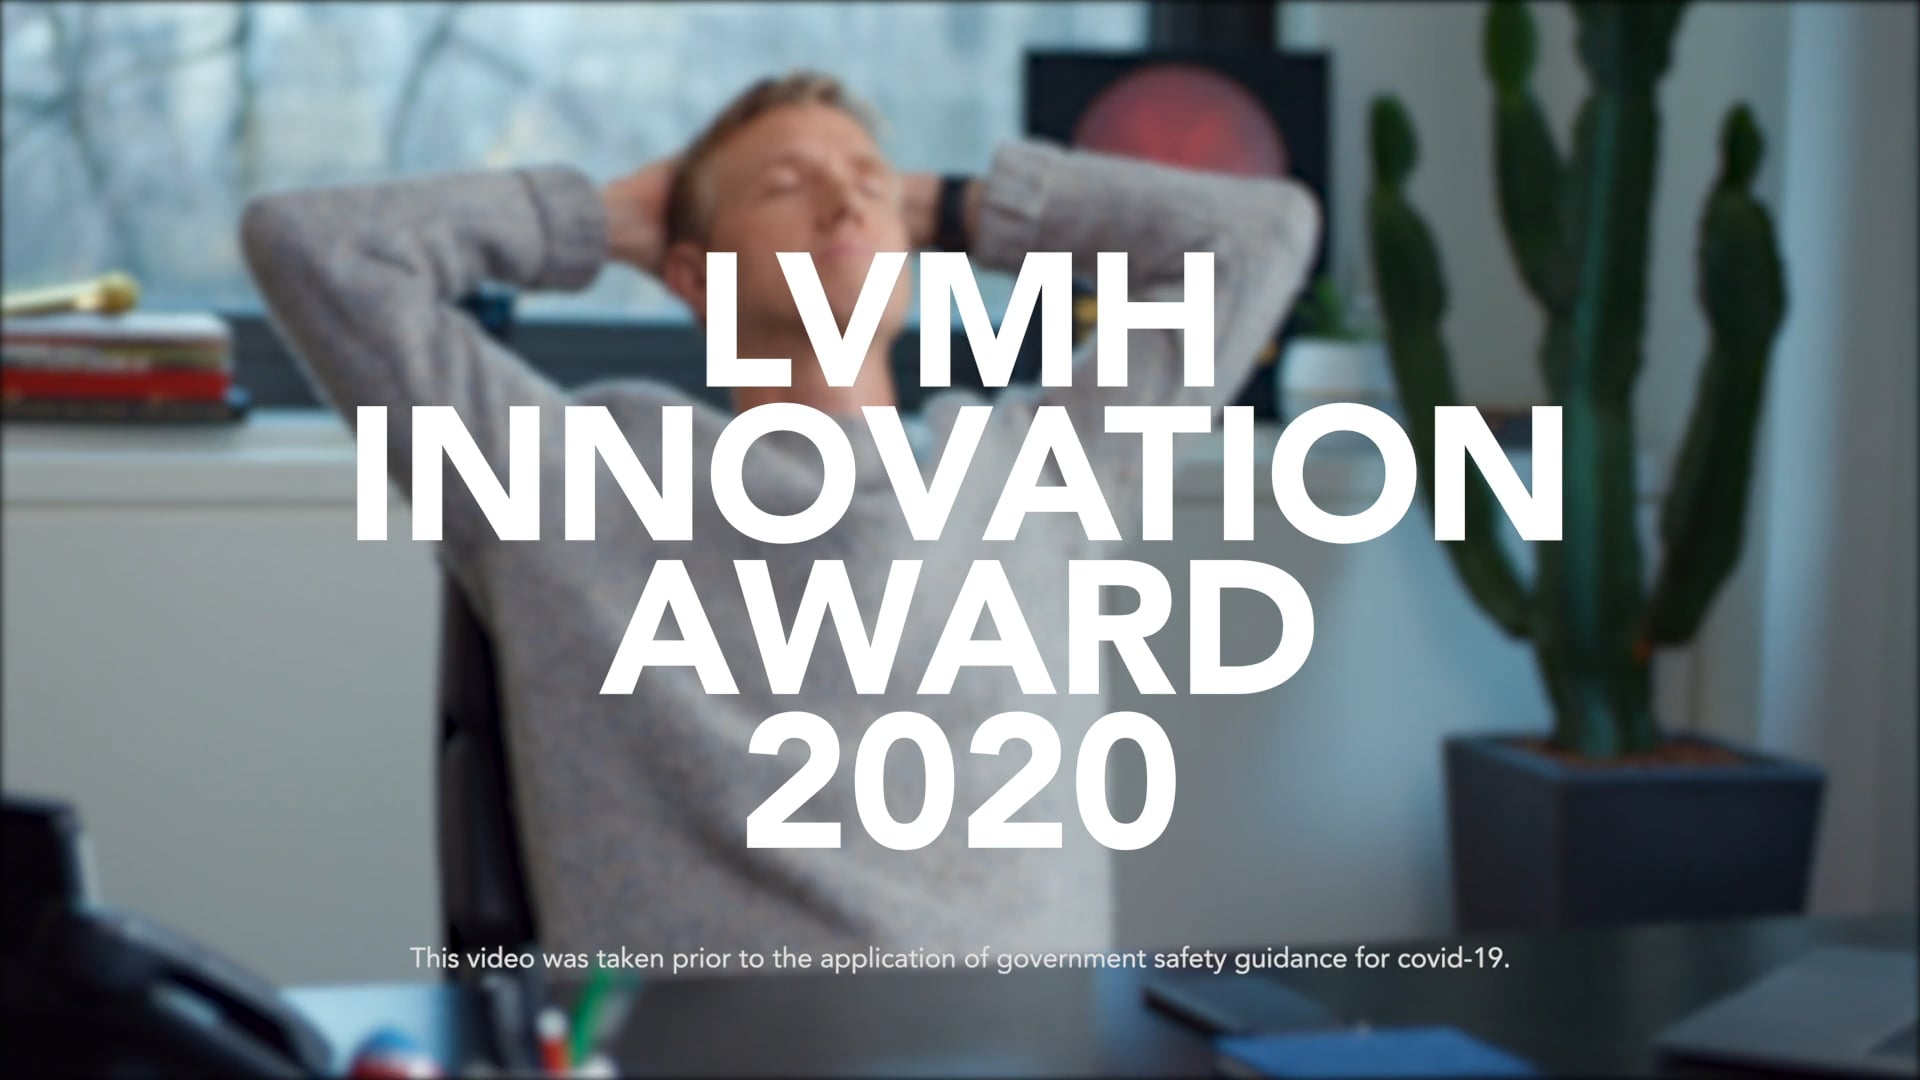 LVMH and innovation - LVMH